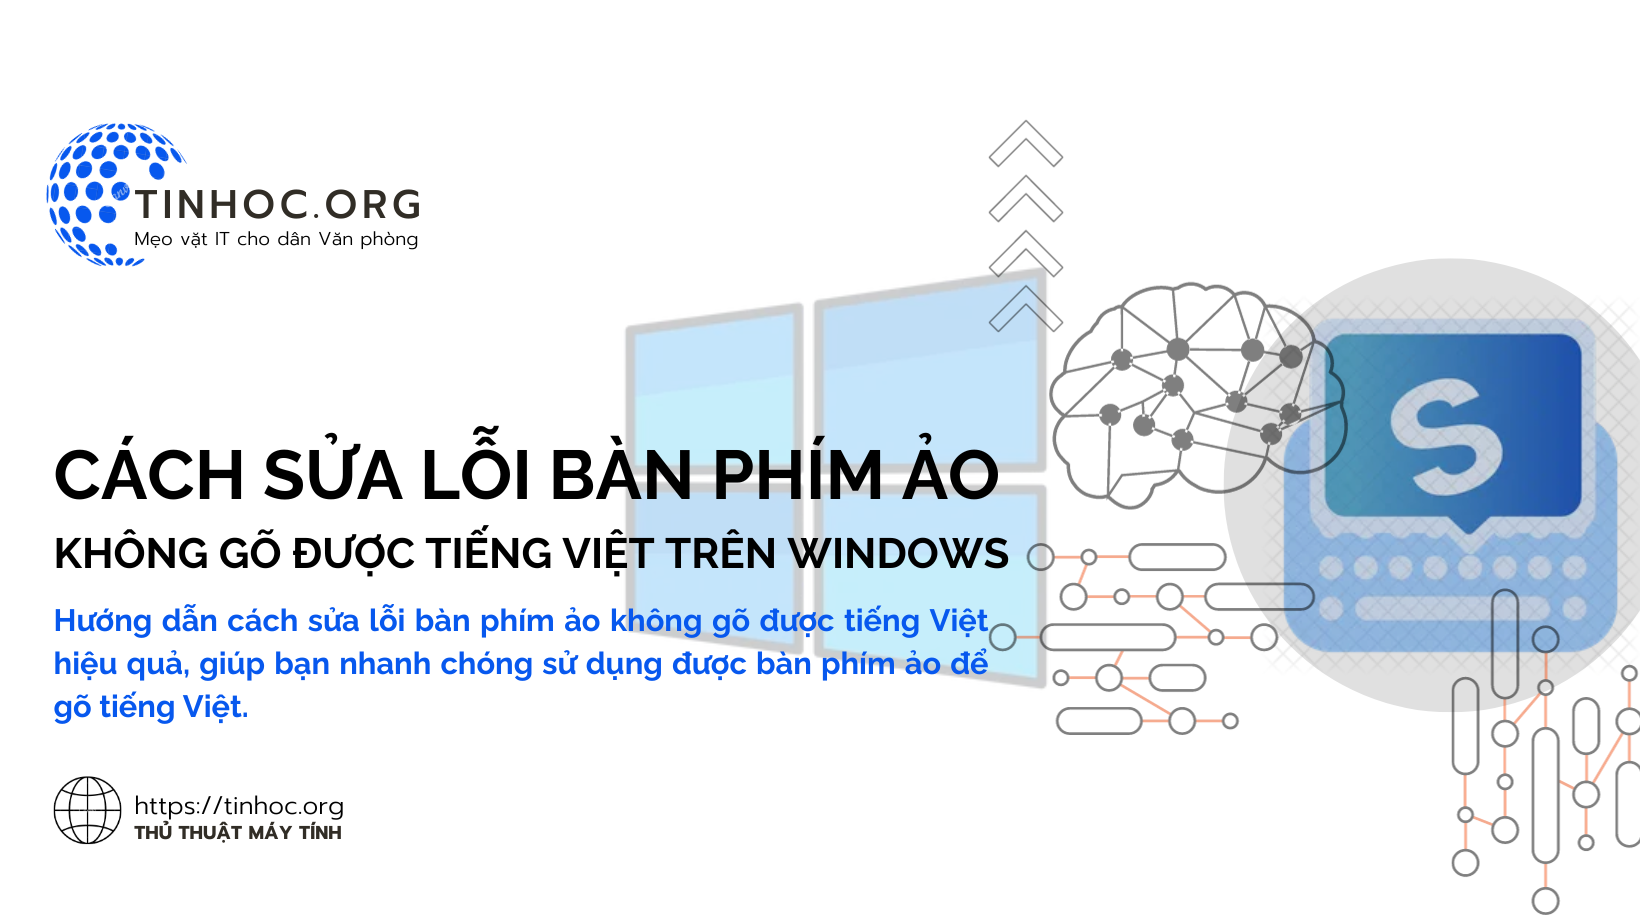 Cách sửa lỗi bàn phím ảo không gõ được tiếng Việt trên Windows